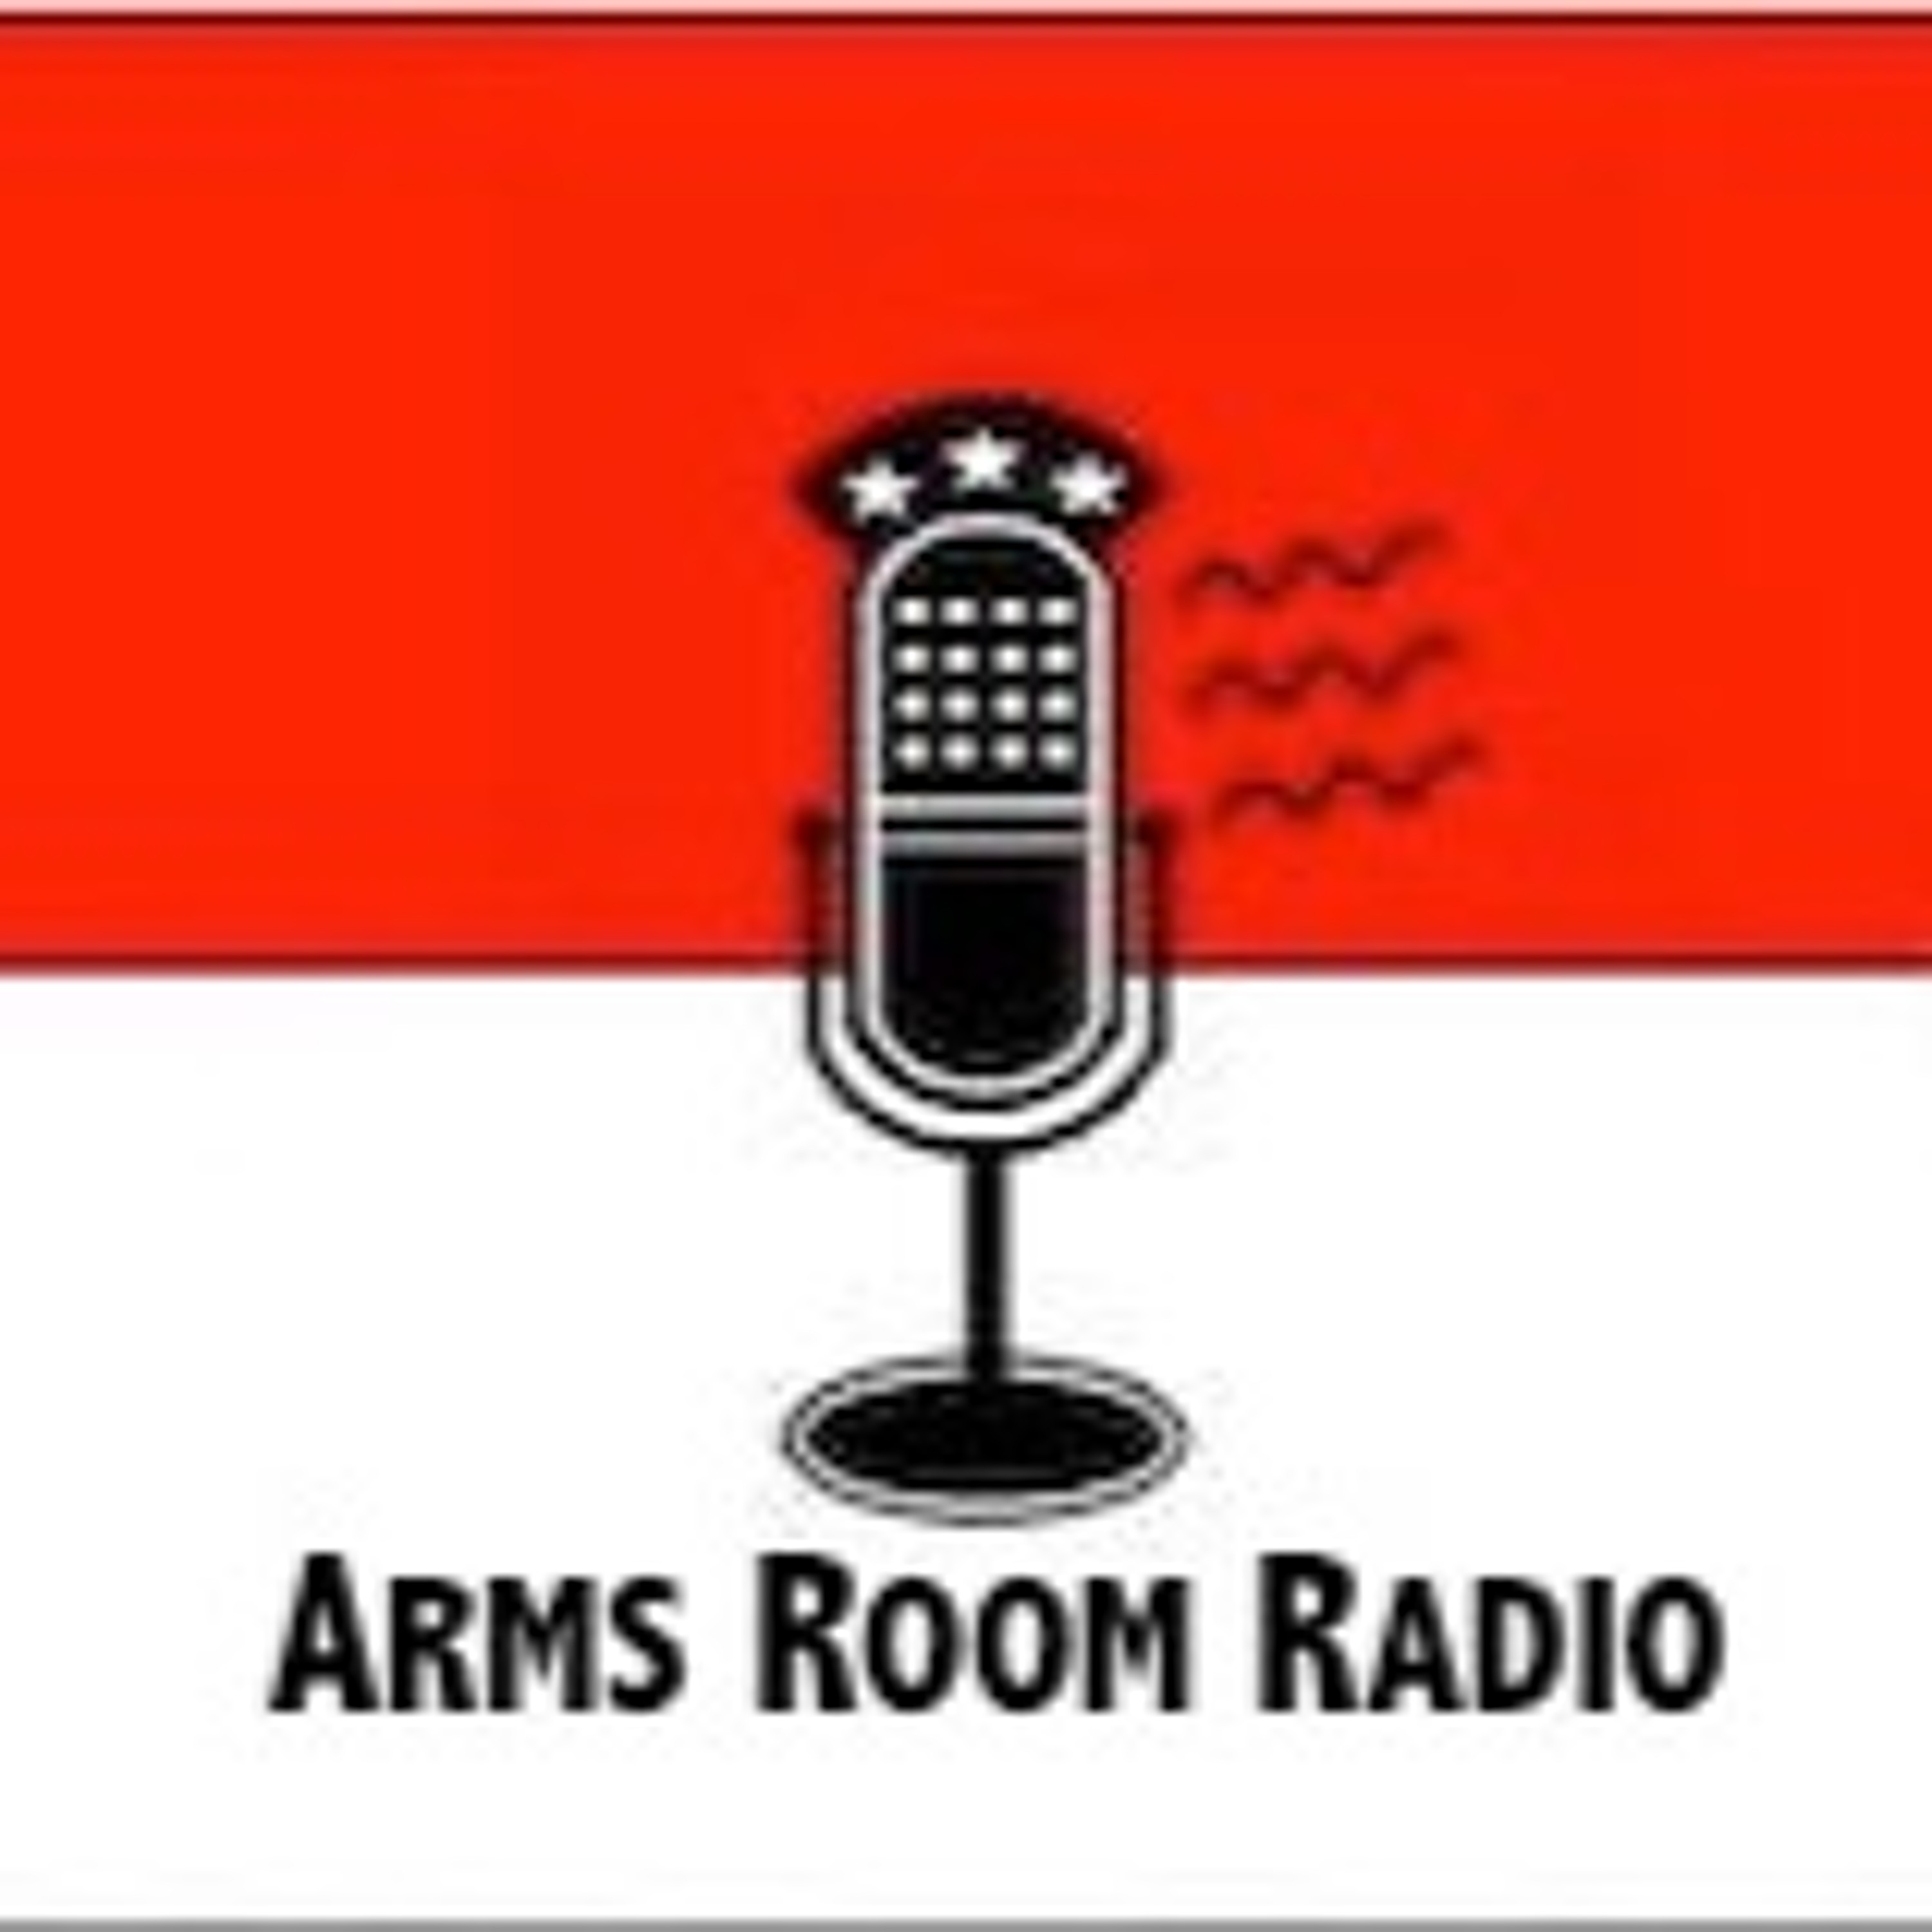 ArmsRoomRadio 09.14.19 Yehuda Remer and NRA wrap up